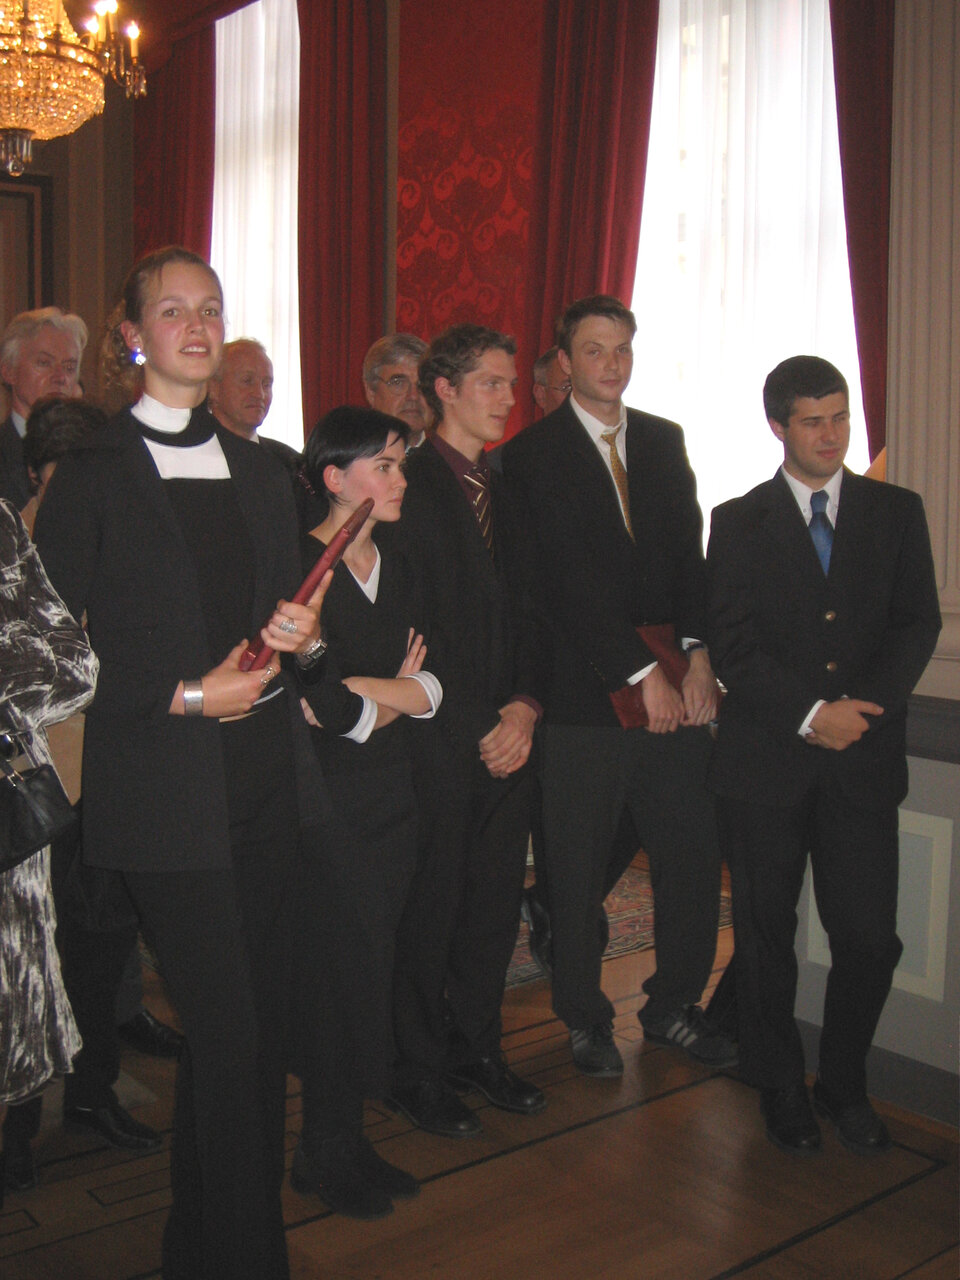 De vijf laureaten van de Odissea-prijs met de winnaar in het midden